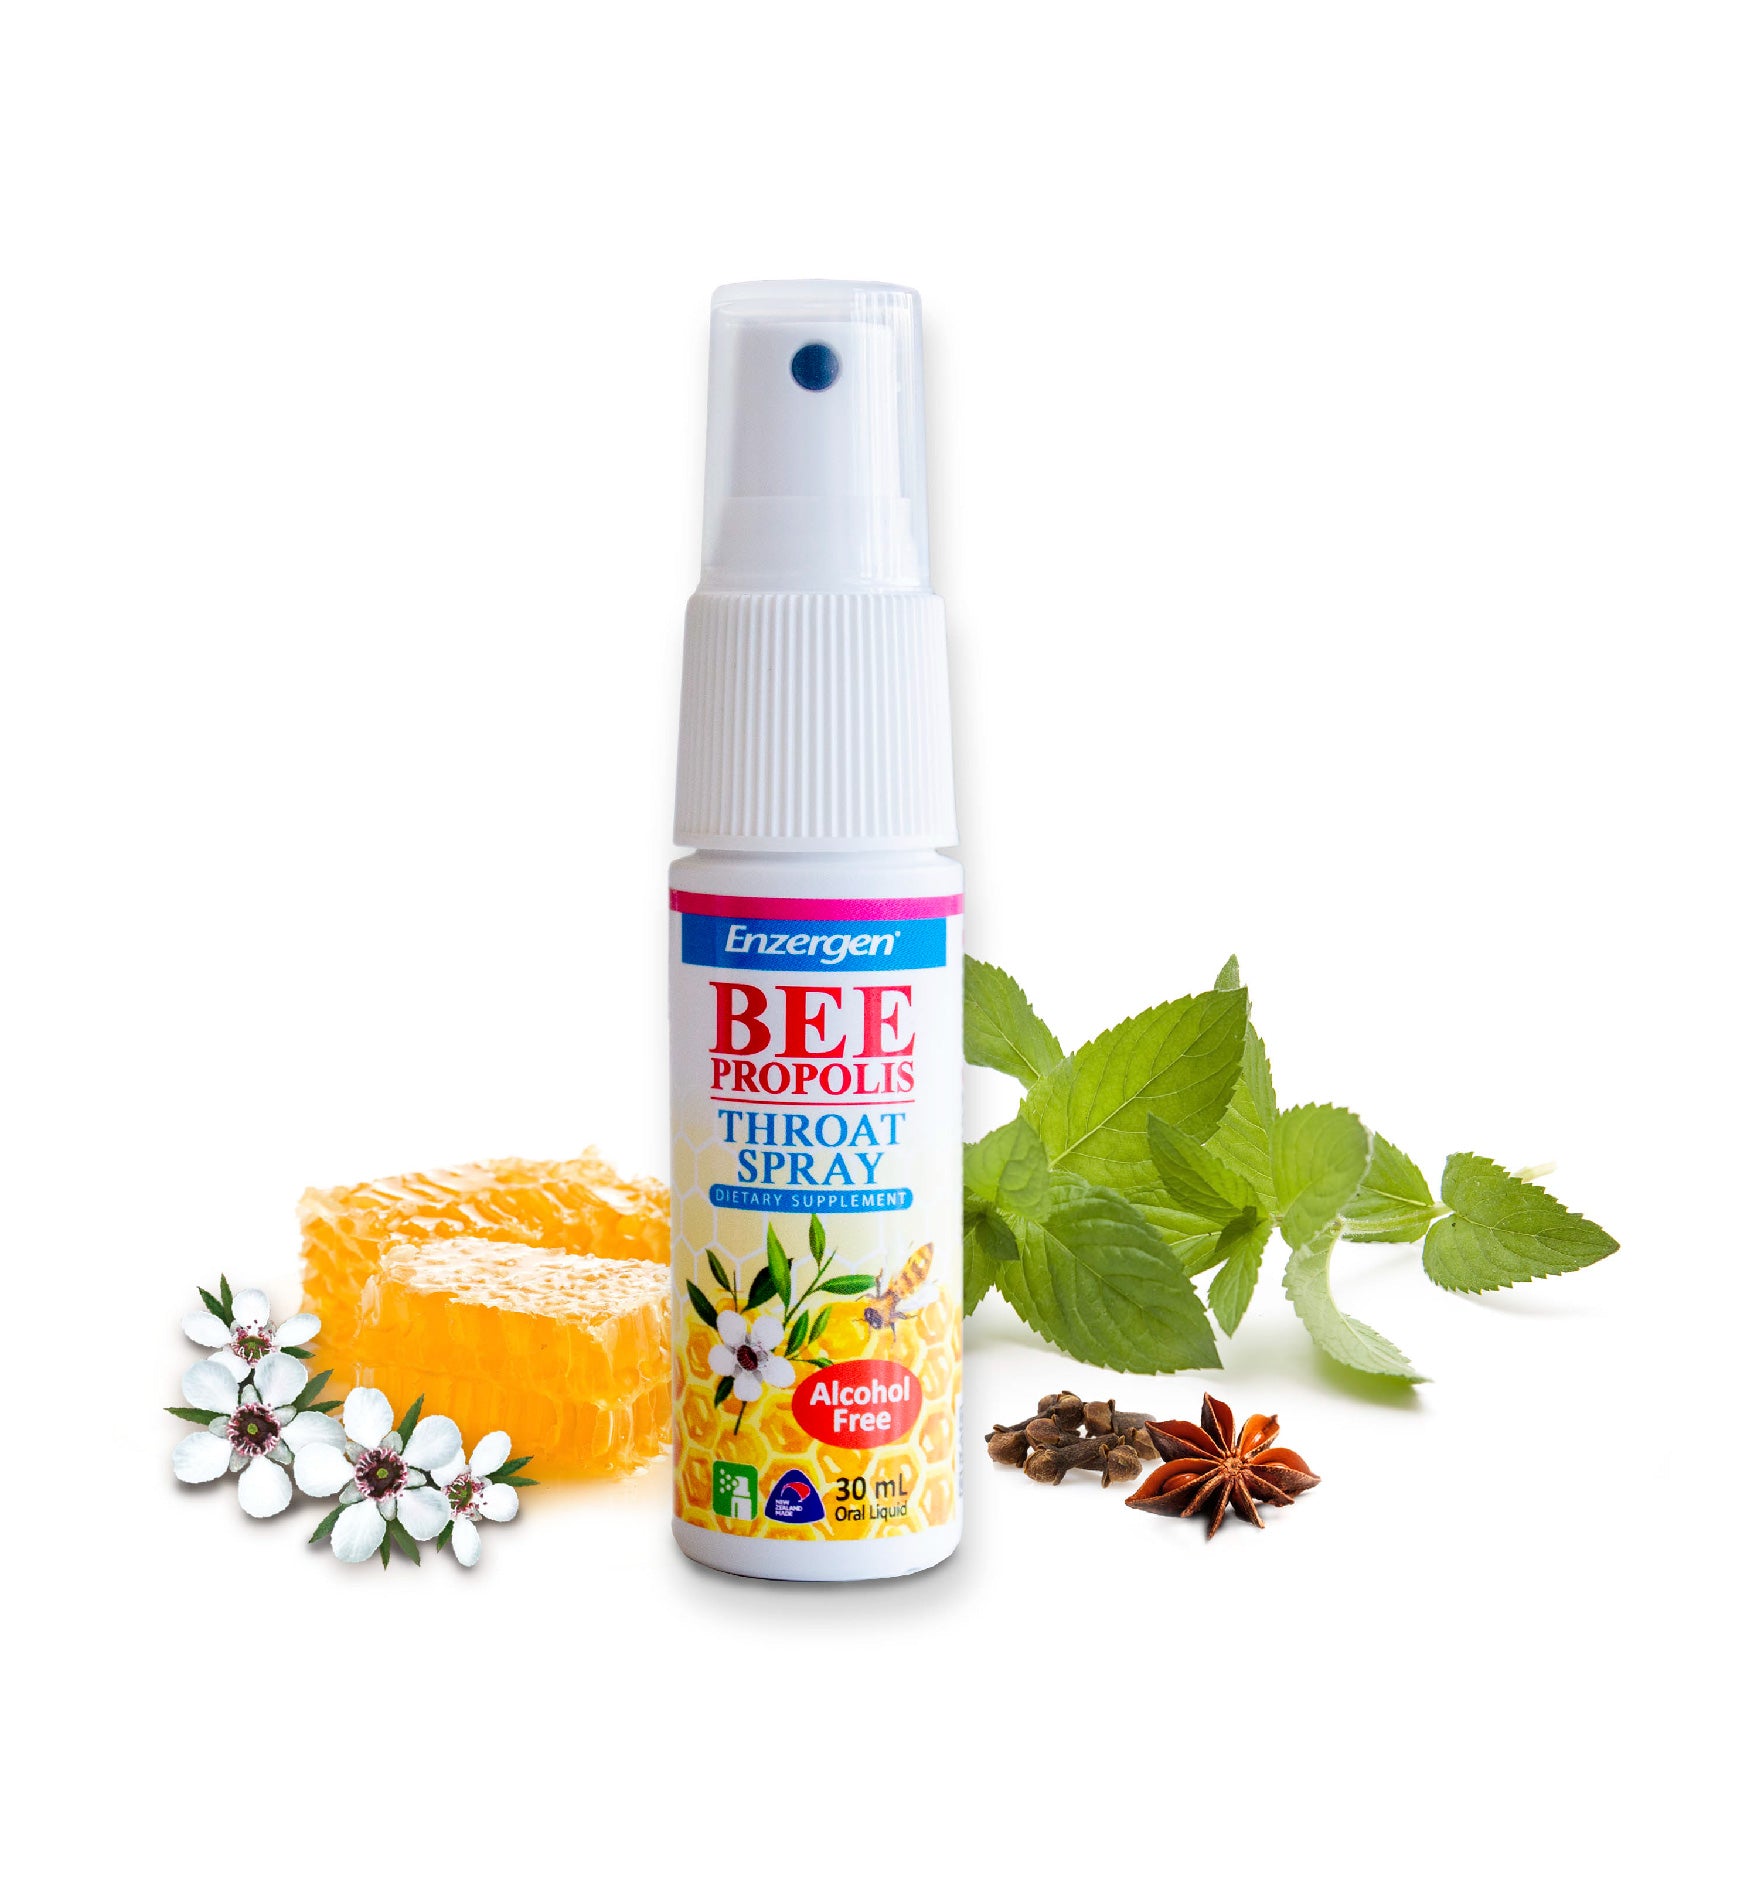 Bee Propolis Extract & Throat Spray (Alcohol Free) - KiwiCorp New Zealand